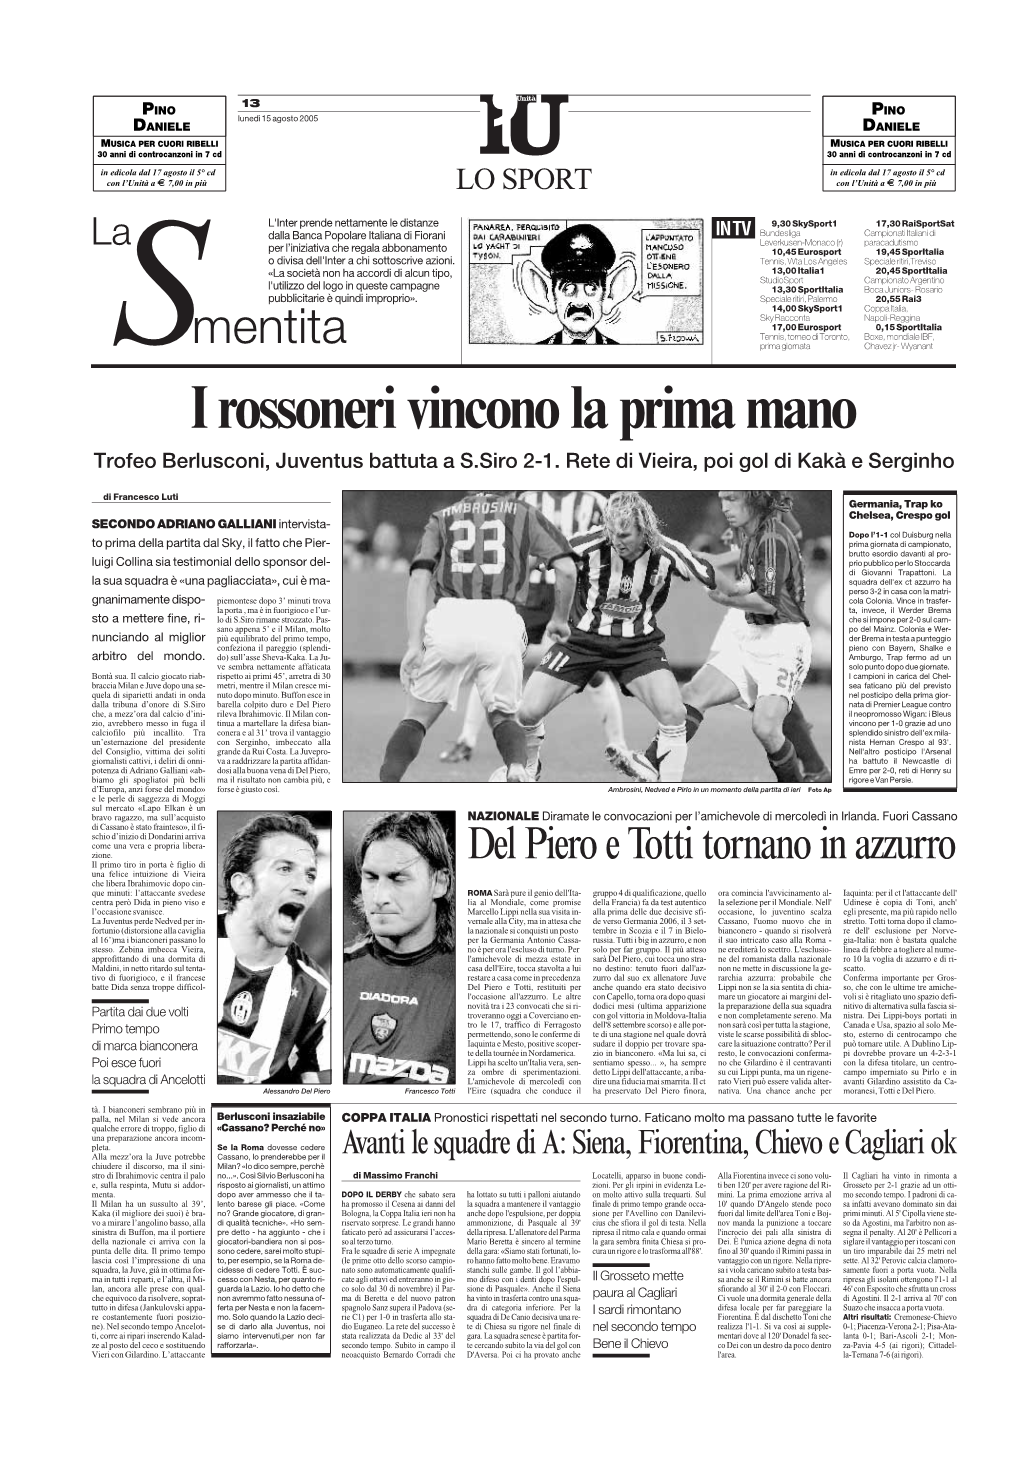 I Rossoneri Vincono La Prima Mano Trofeo Berlusconi, Juventus Battuta a S.Siro 2-1